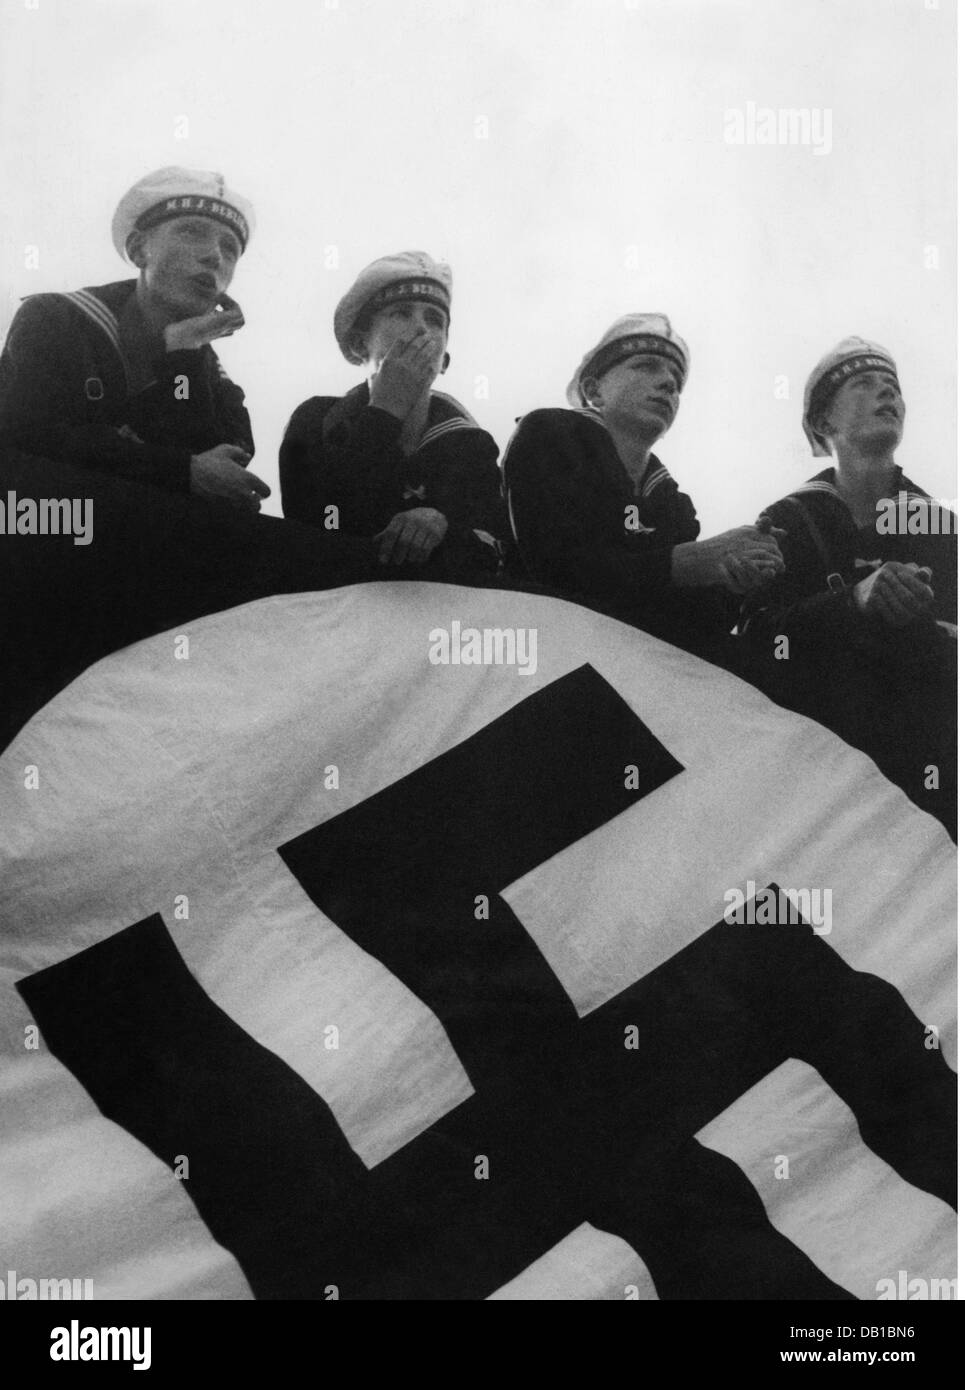 Nazisme / National socialisme, organisations, Hitler Jeunesse, Marine-HJ, mineurs à une cérémonie, 1935, droits additionnels-Clearences-non disponible Banque D'Images